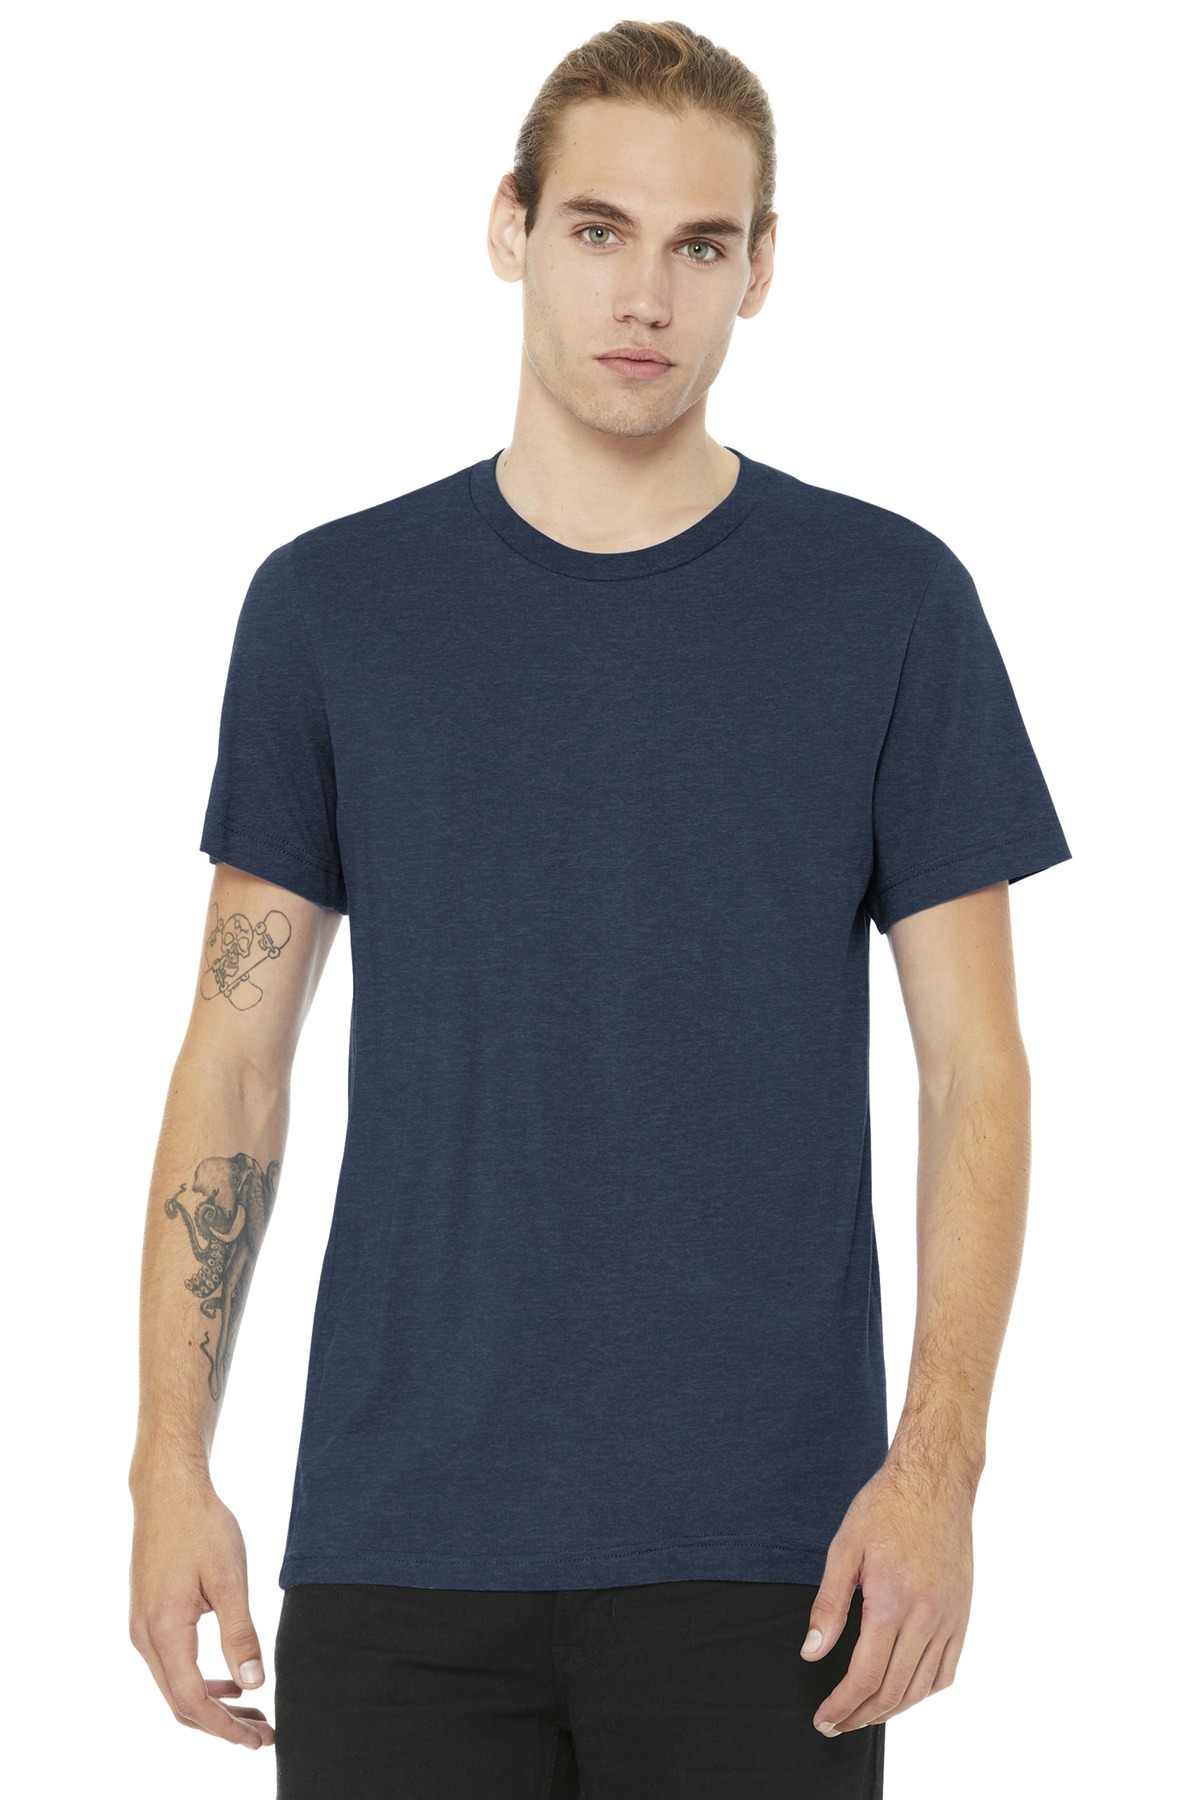 https://images.shirtspace.com/fullsize/pxUN6n1N%2FI4DgVZfY92uOA%3D%3D/64401/8496-bella-canvas-3001cvc-unisex-heather-cvc-short-sleeve-t-shirt-front-heather-navy.jpg